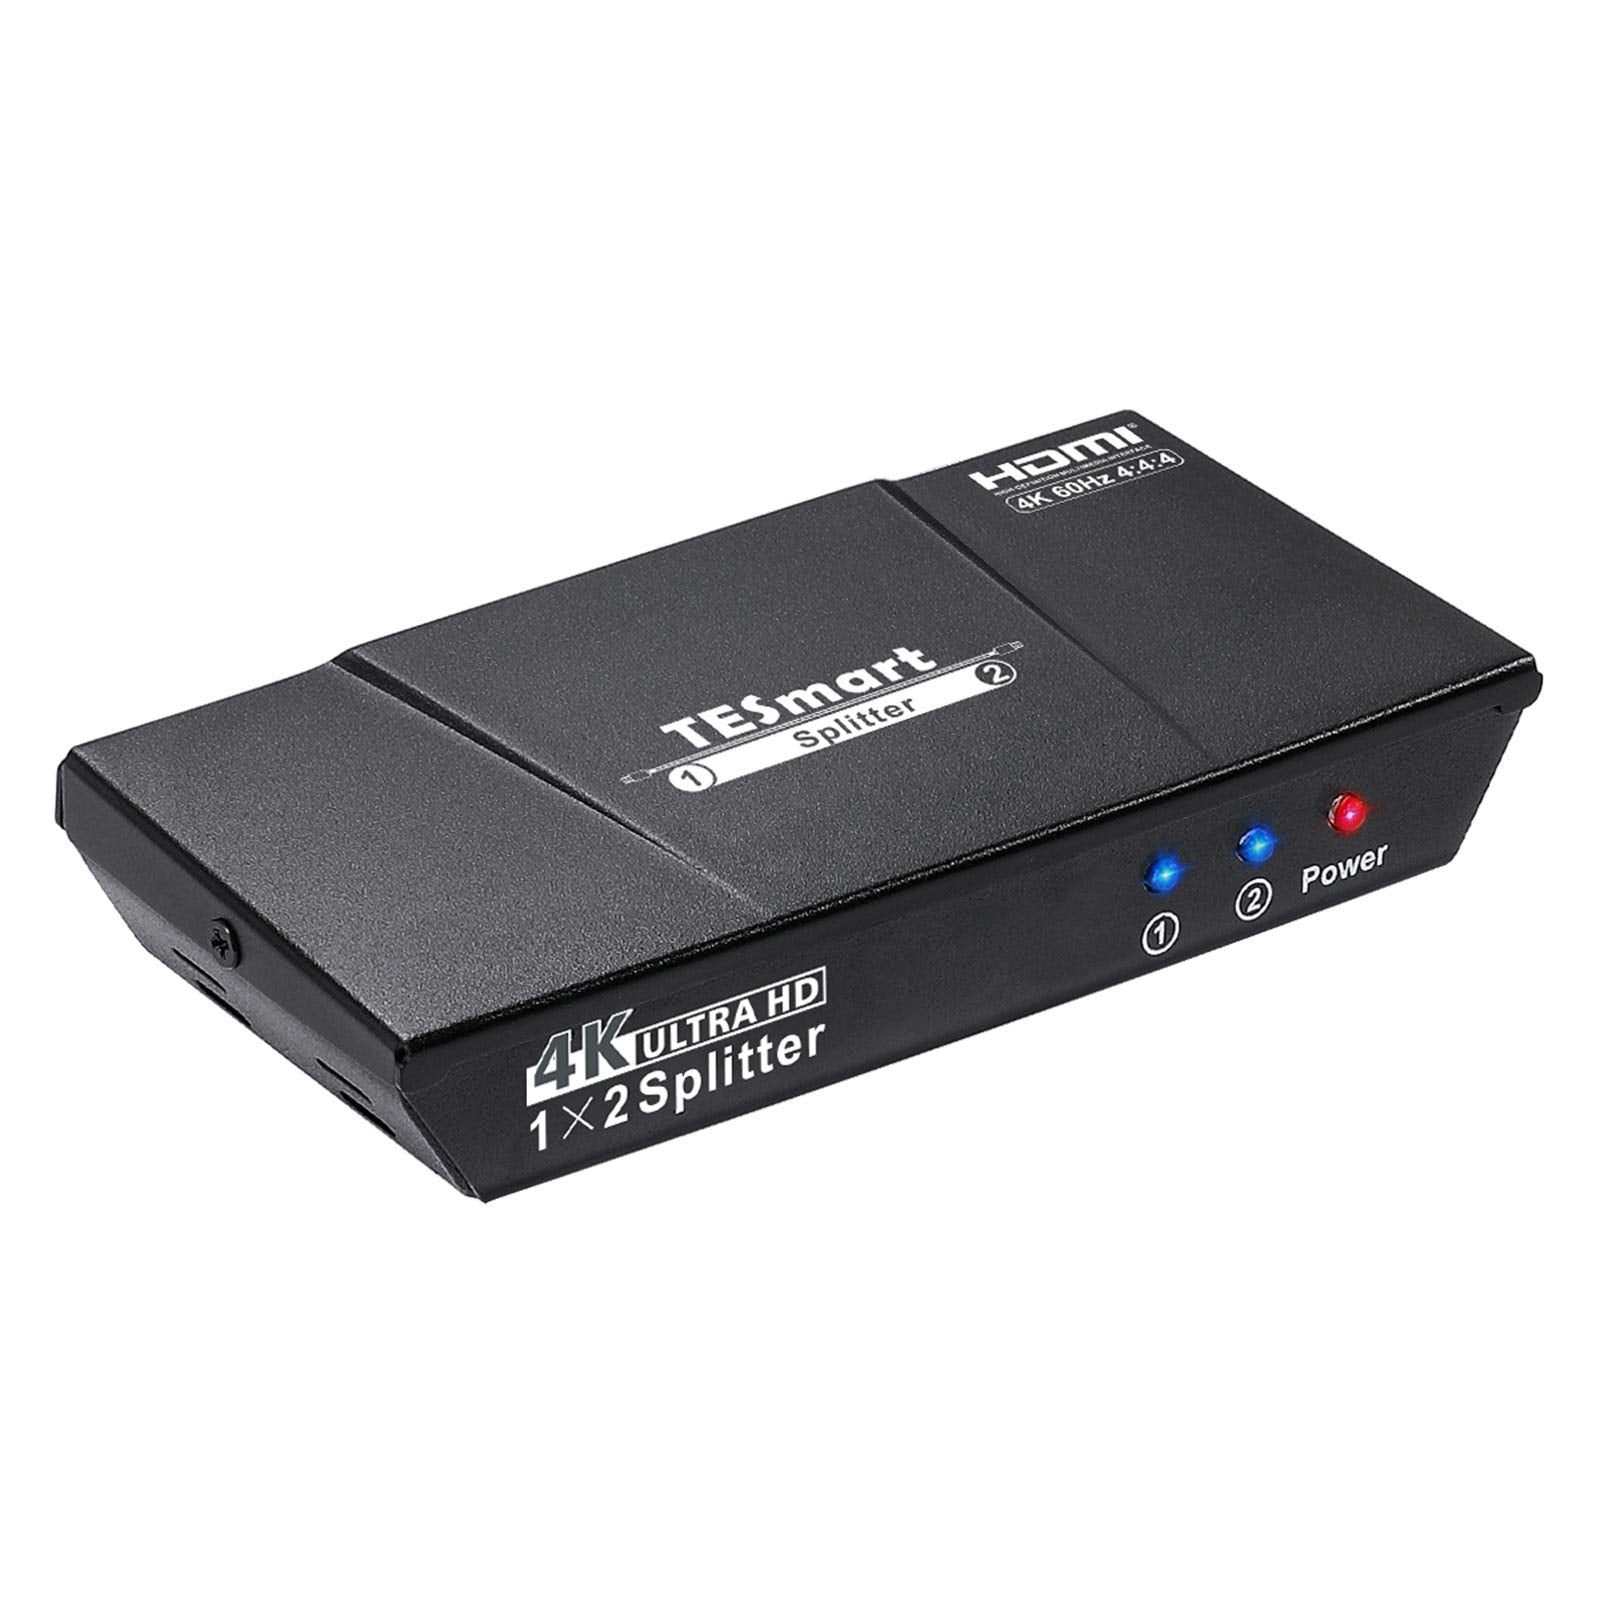 HDMI分配器 1入力2分配 4K60Hz 4:4:4 CEC 手動 切り替え EDID認識対応